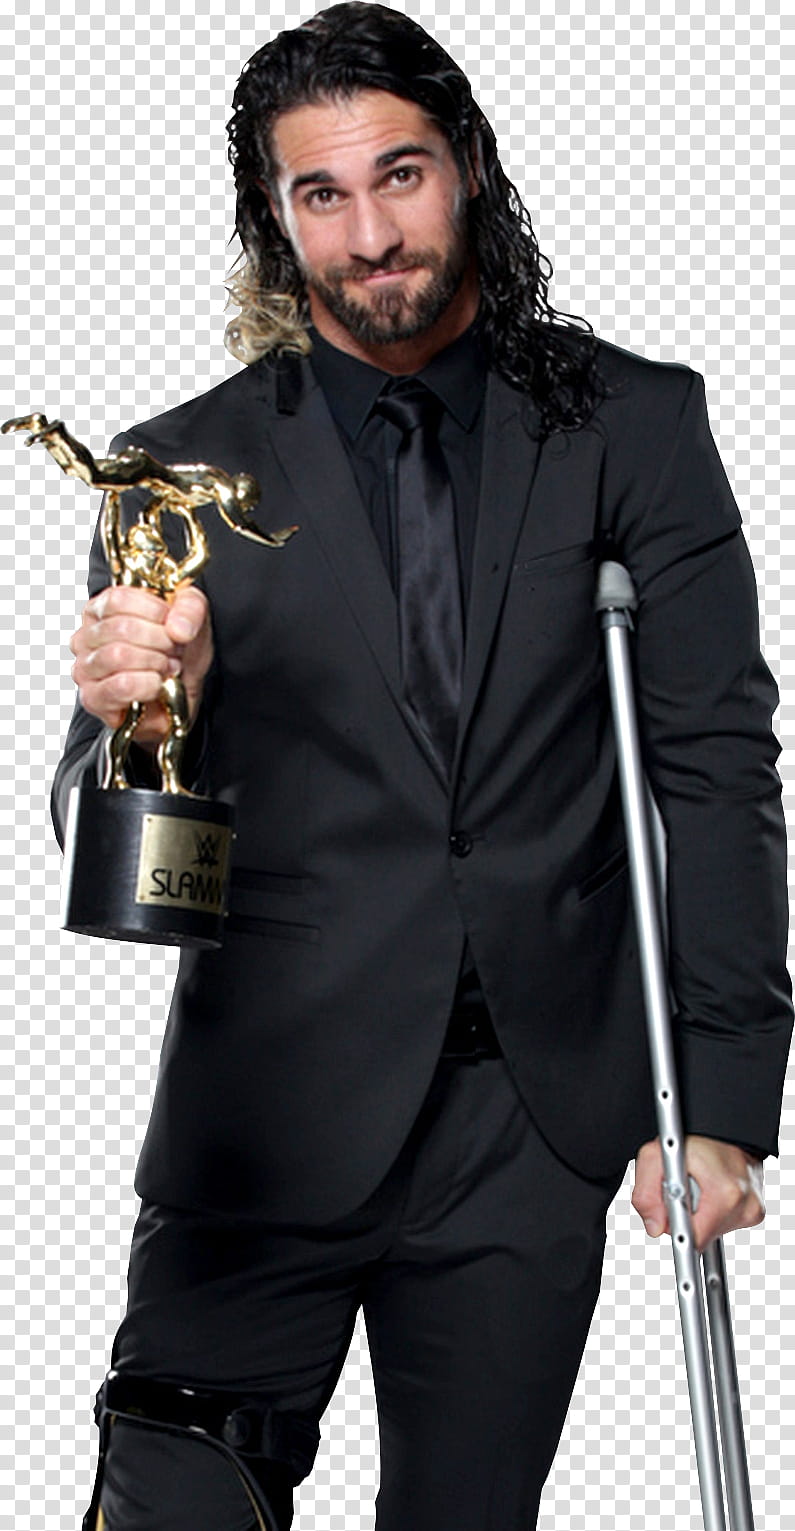 Seth Rollins Slammy Awards  transparent background PNG clipart